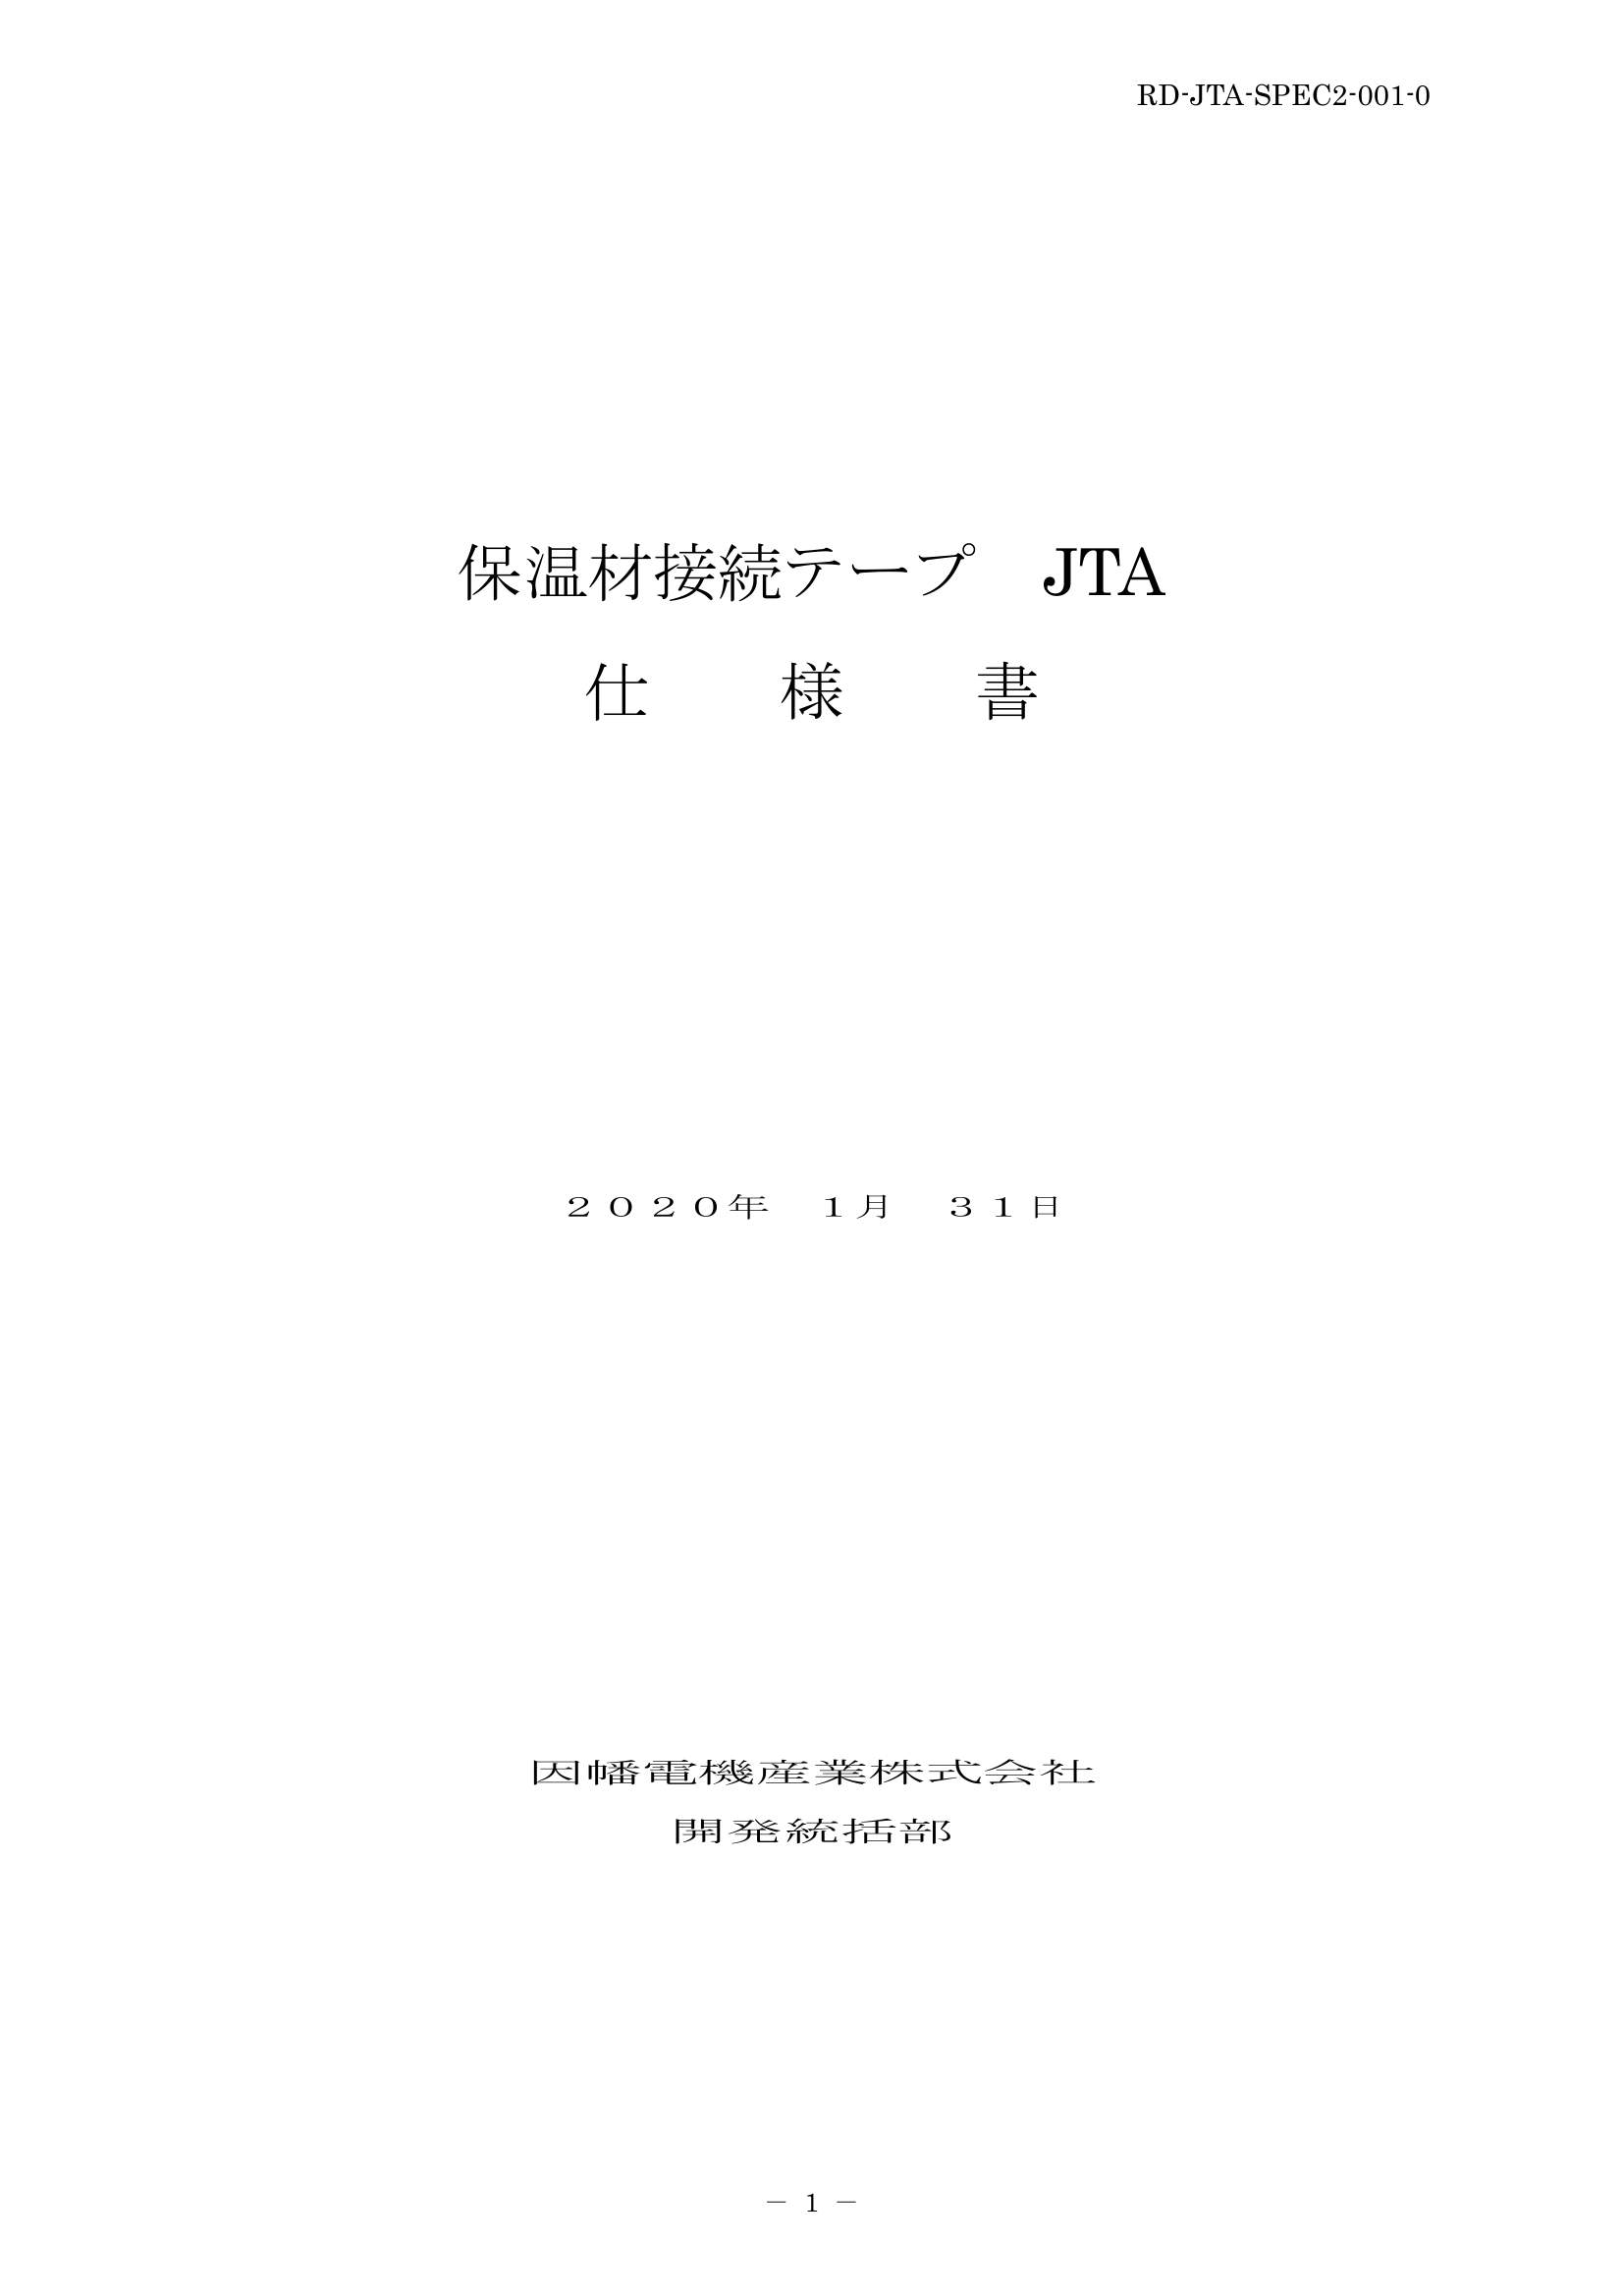 JTA_仕様書_20200131.pdf